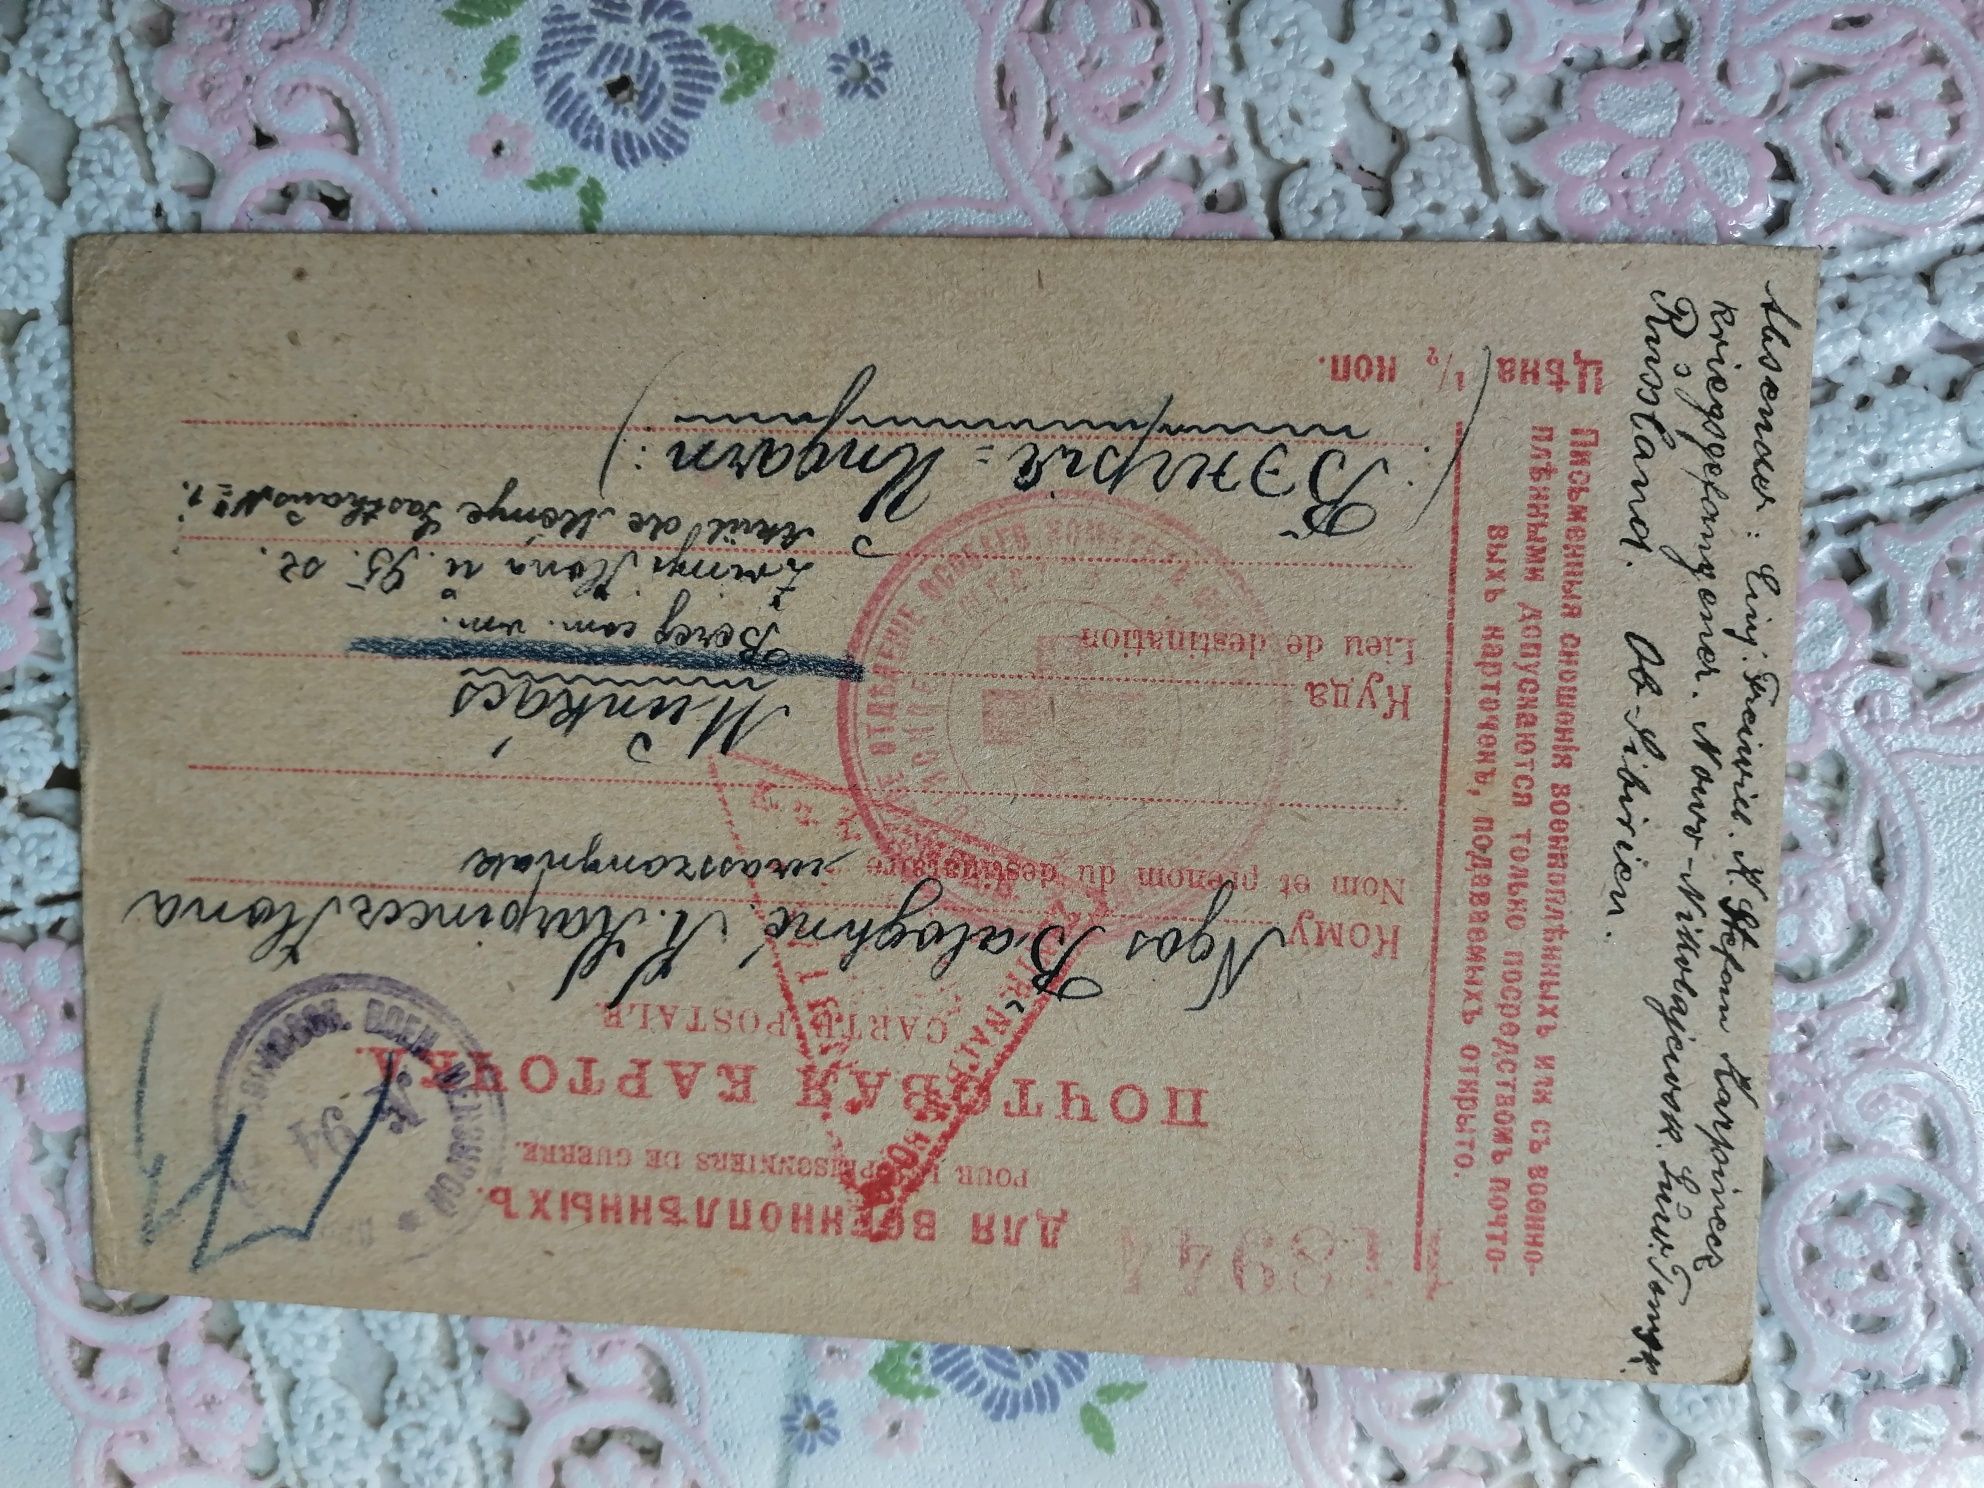 Почтовие карточки военнопленних. 1915-16-17г